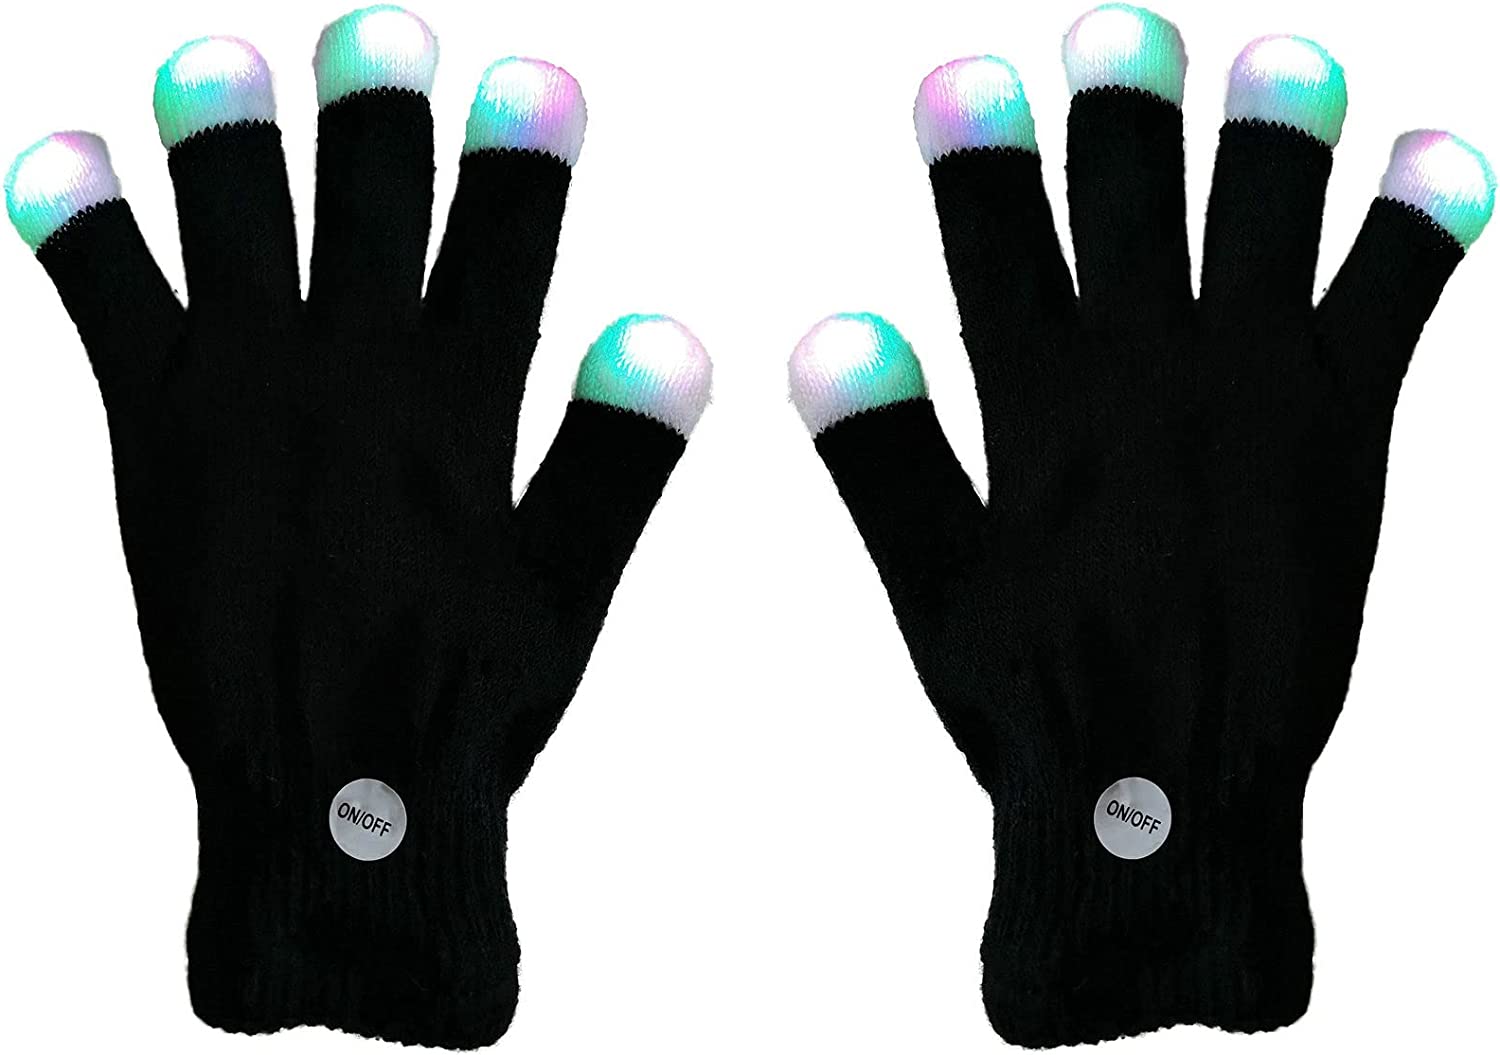 XISFORX Unisex Light-Up Fingertips LED Gloves